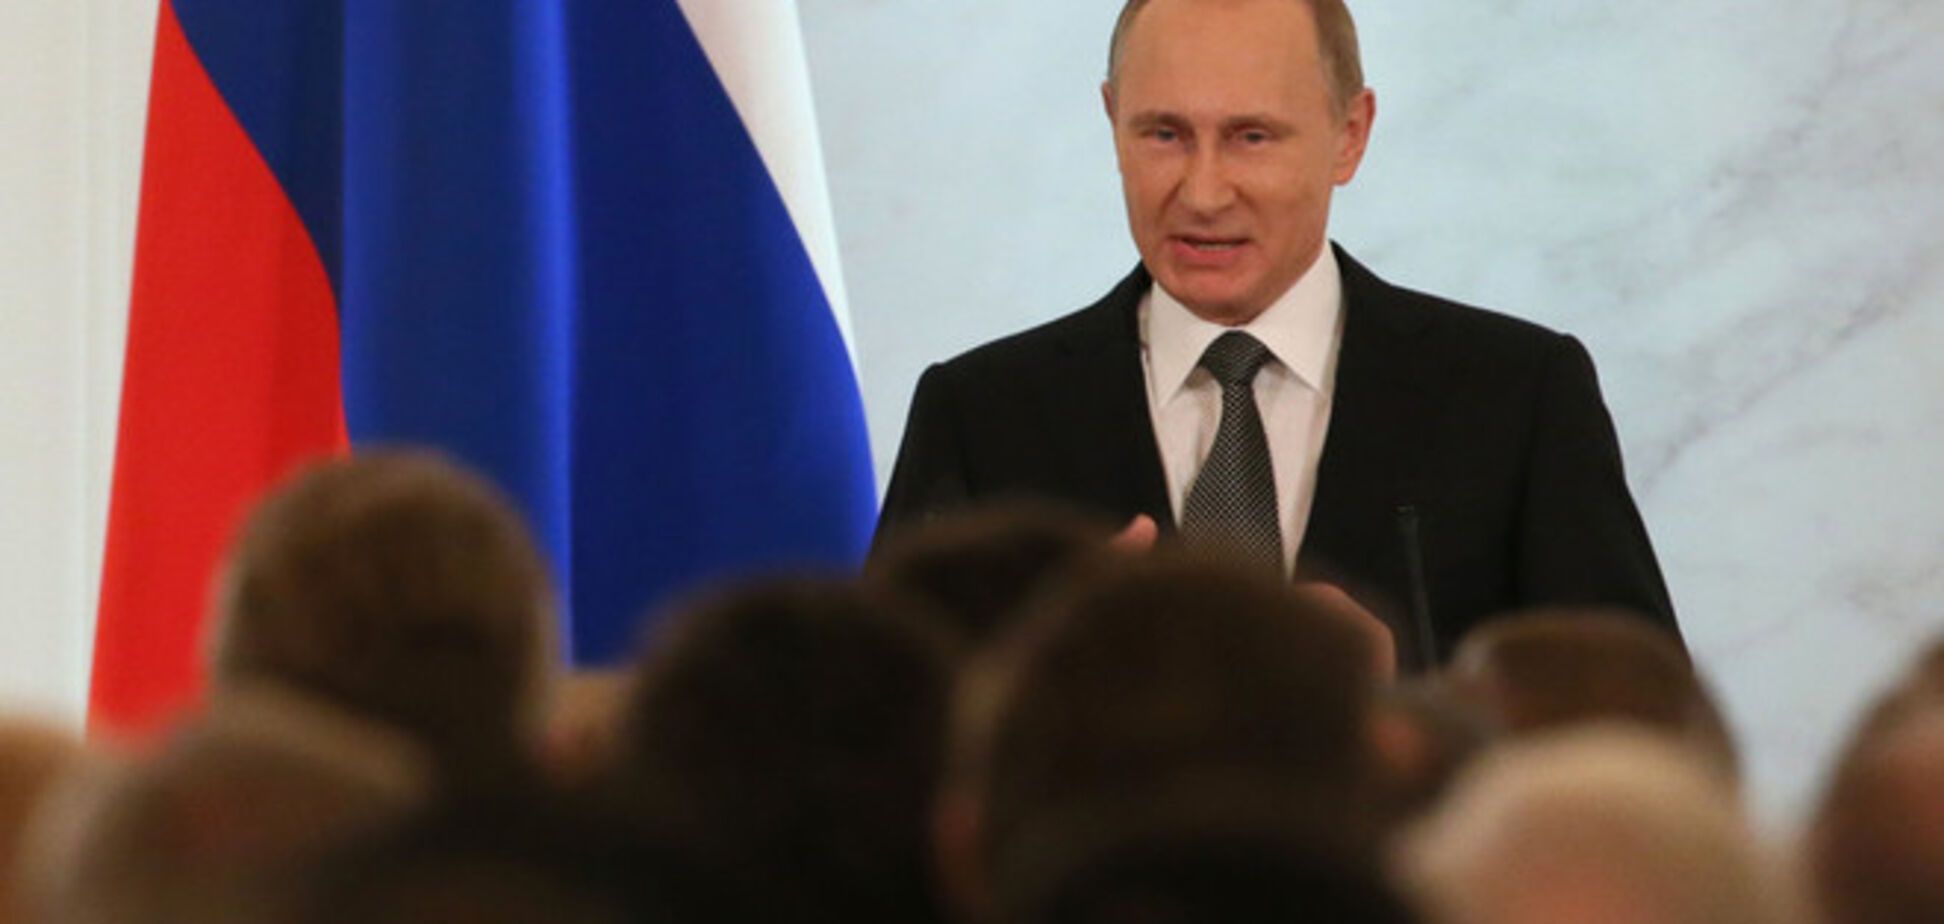 'Who is Mr. Putin?': російський фінансист запропонував нову умову для висунення в президенти РФ